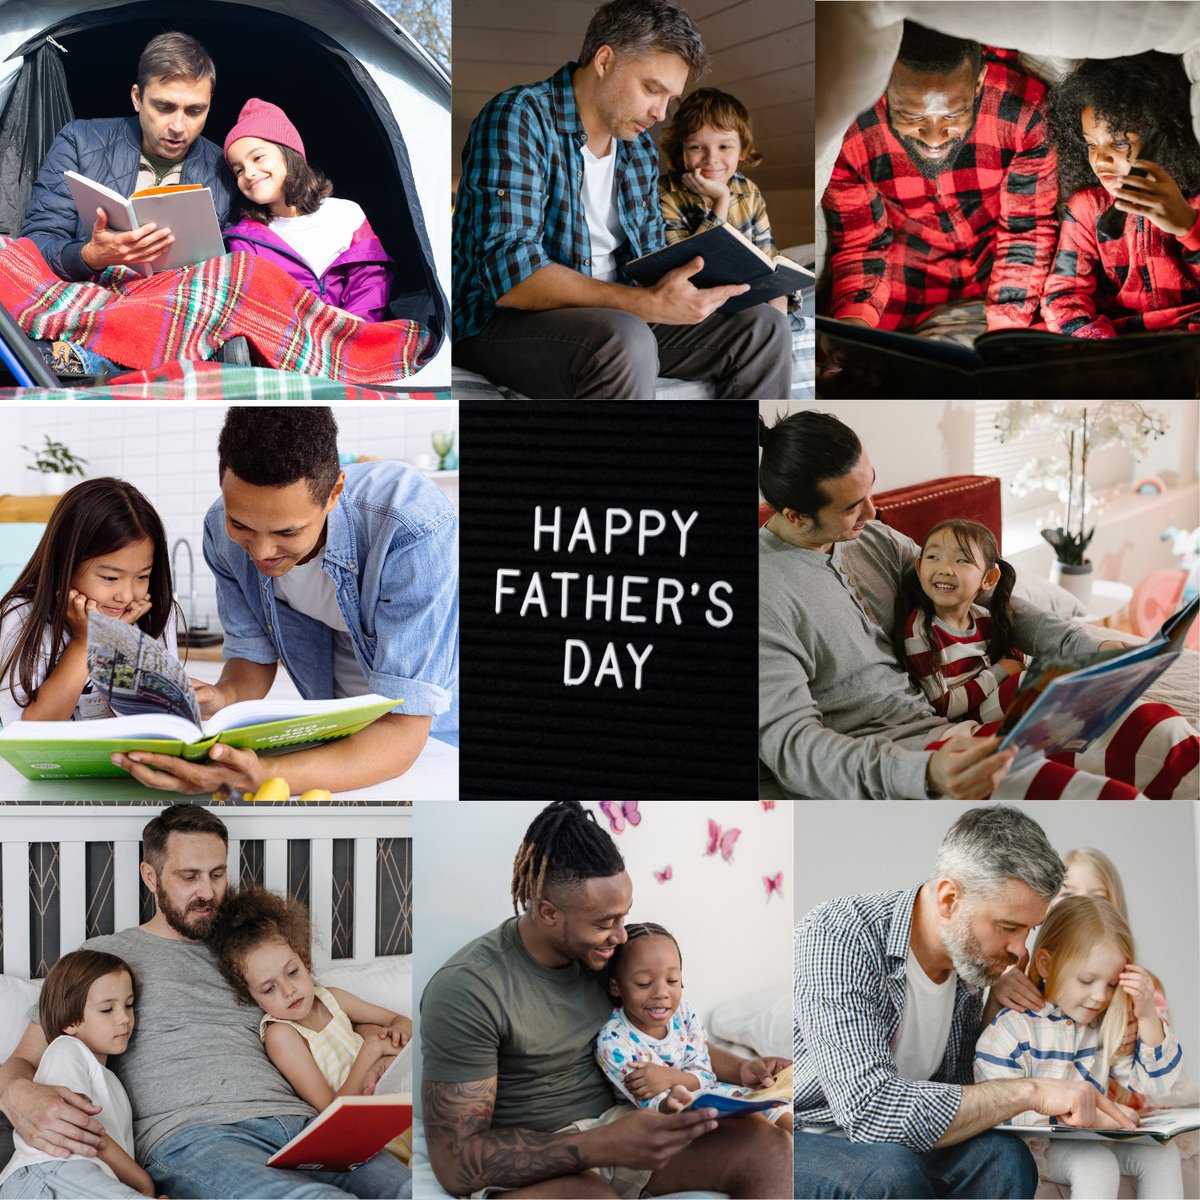 I wish all the Dad's a wonderful Father's Day! ❤️

#Fathers #FathersDay2023 #happyfathersday2023 #happyfathers #HappyFathersDayWeekend #Sunday #SundayMorning #SundayFunday #sundayvibes